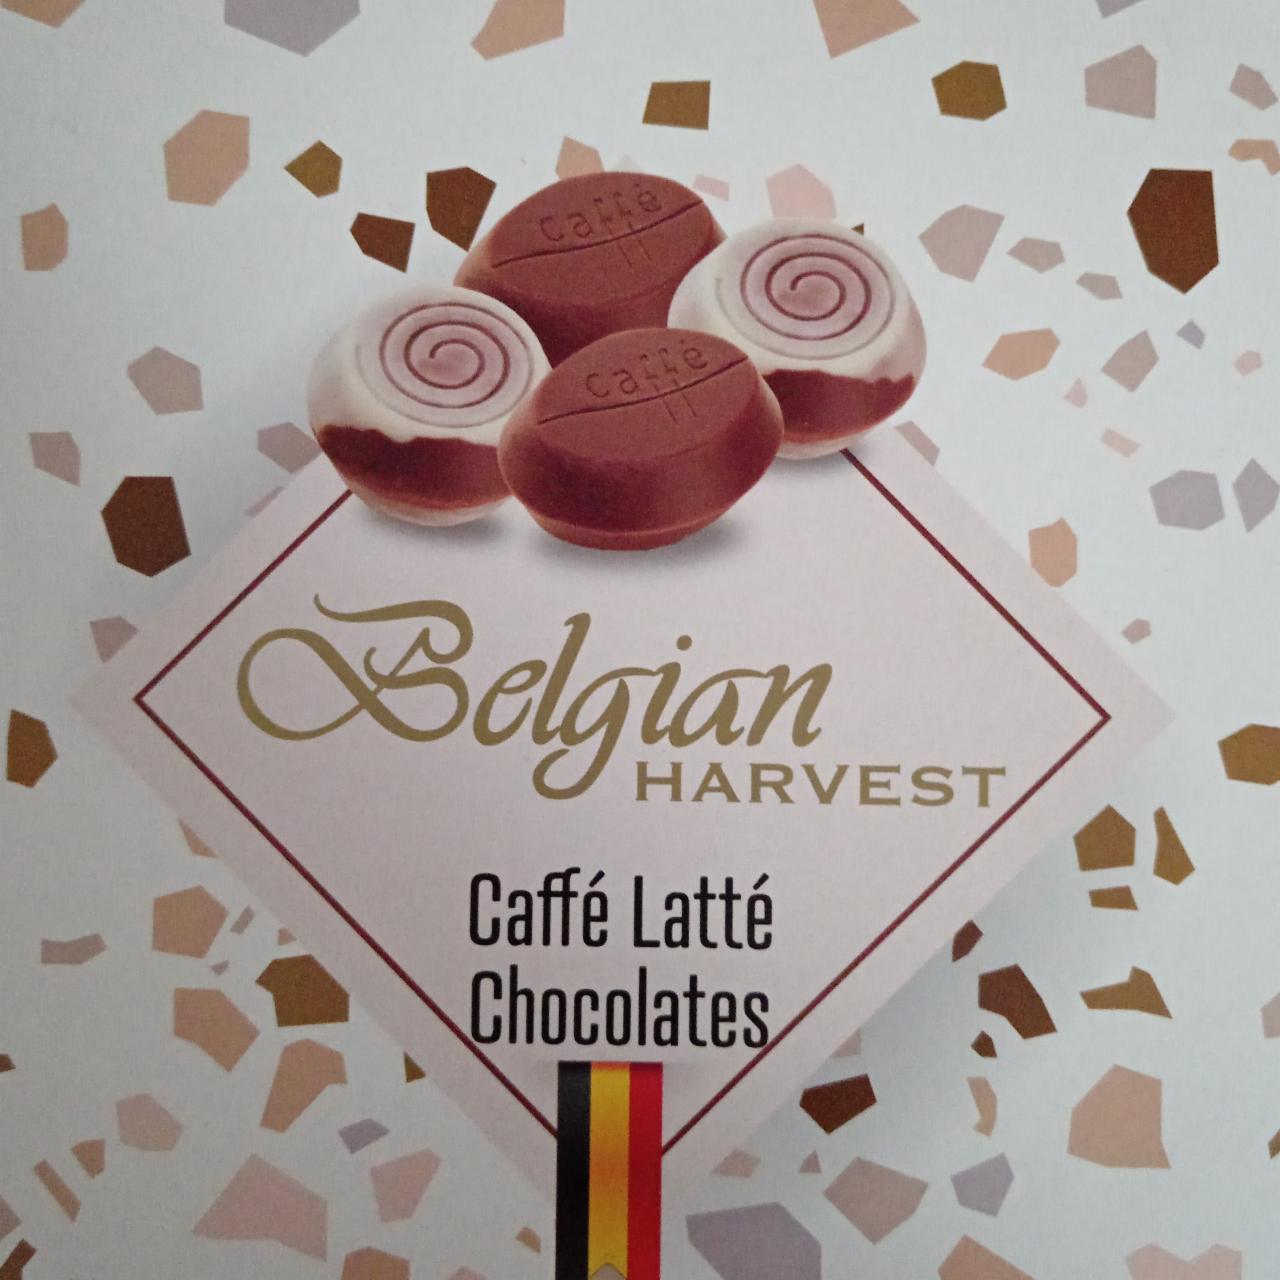 Фото - Конфеты шоколадные латте Caffe Latte Belgian Harvest